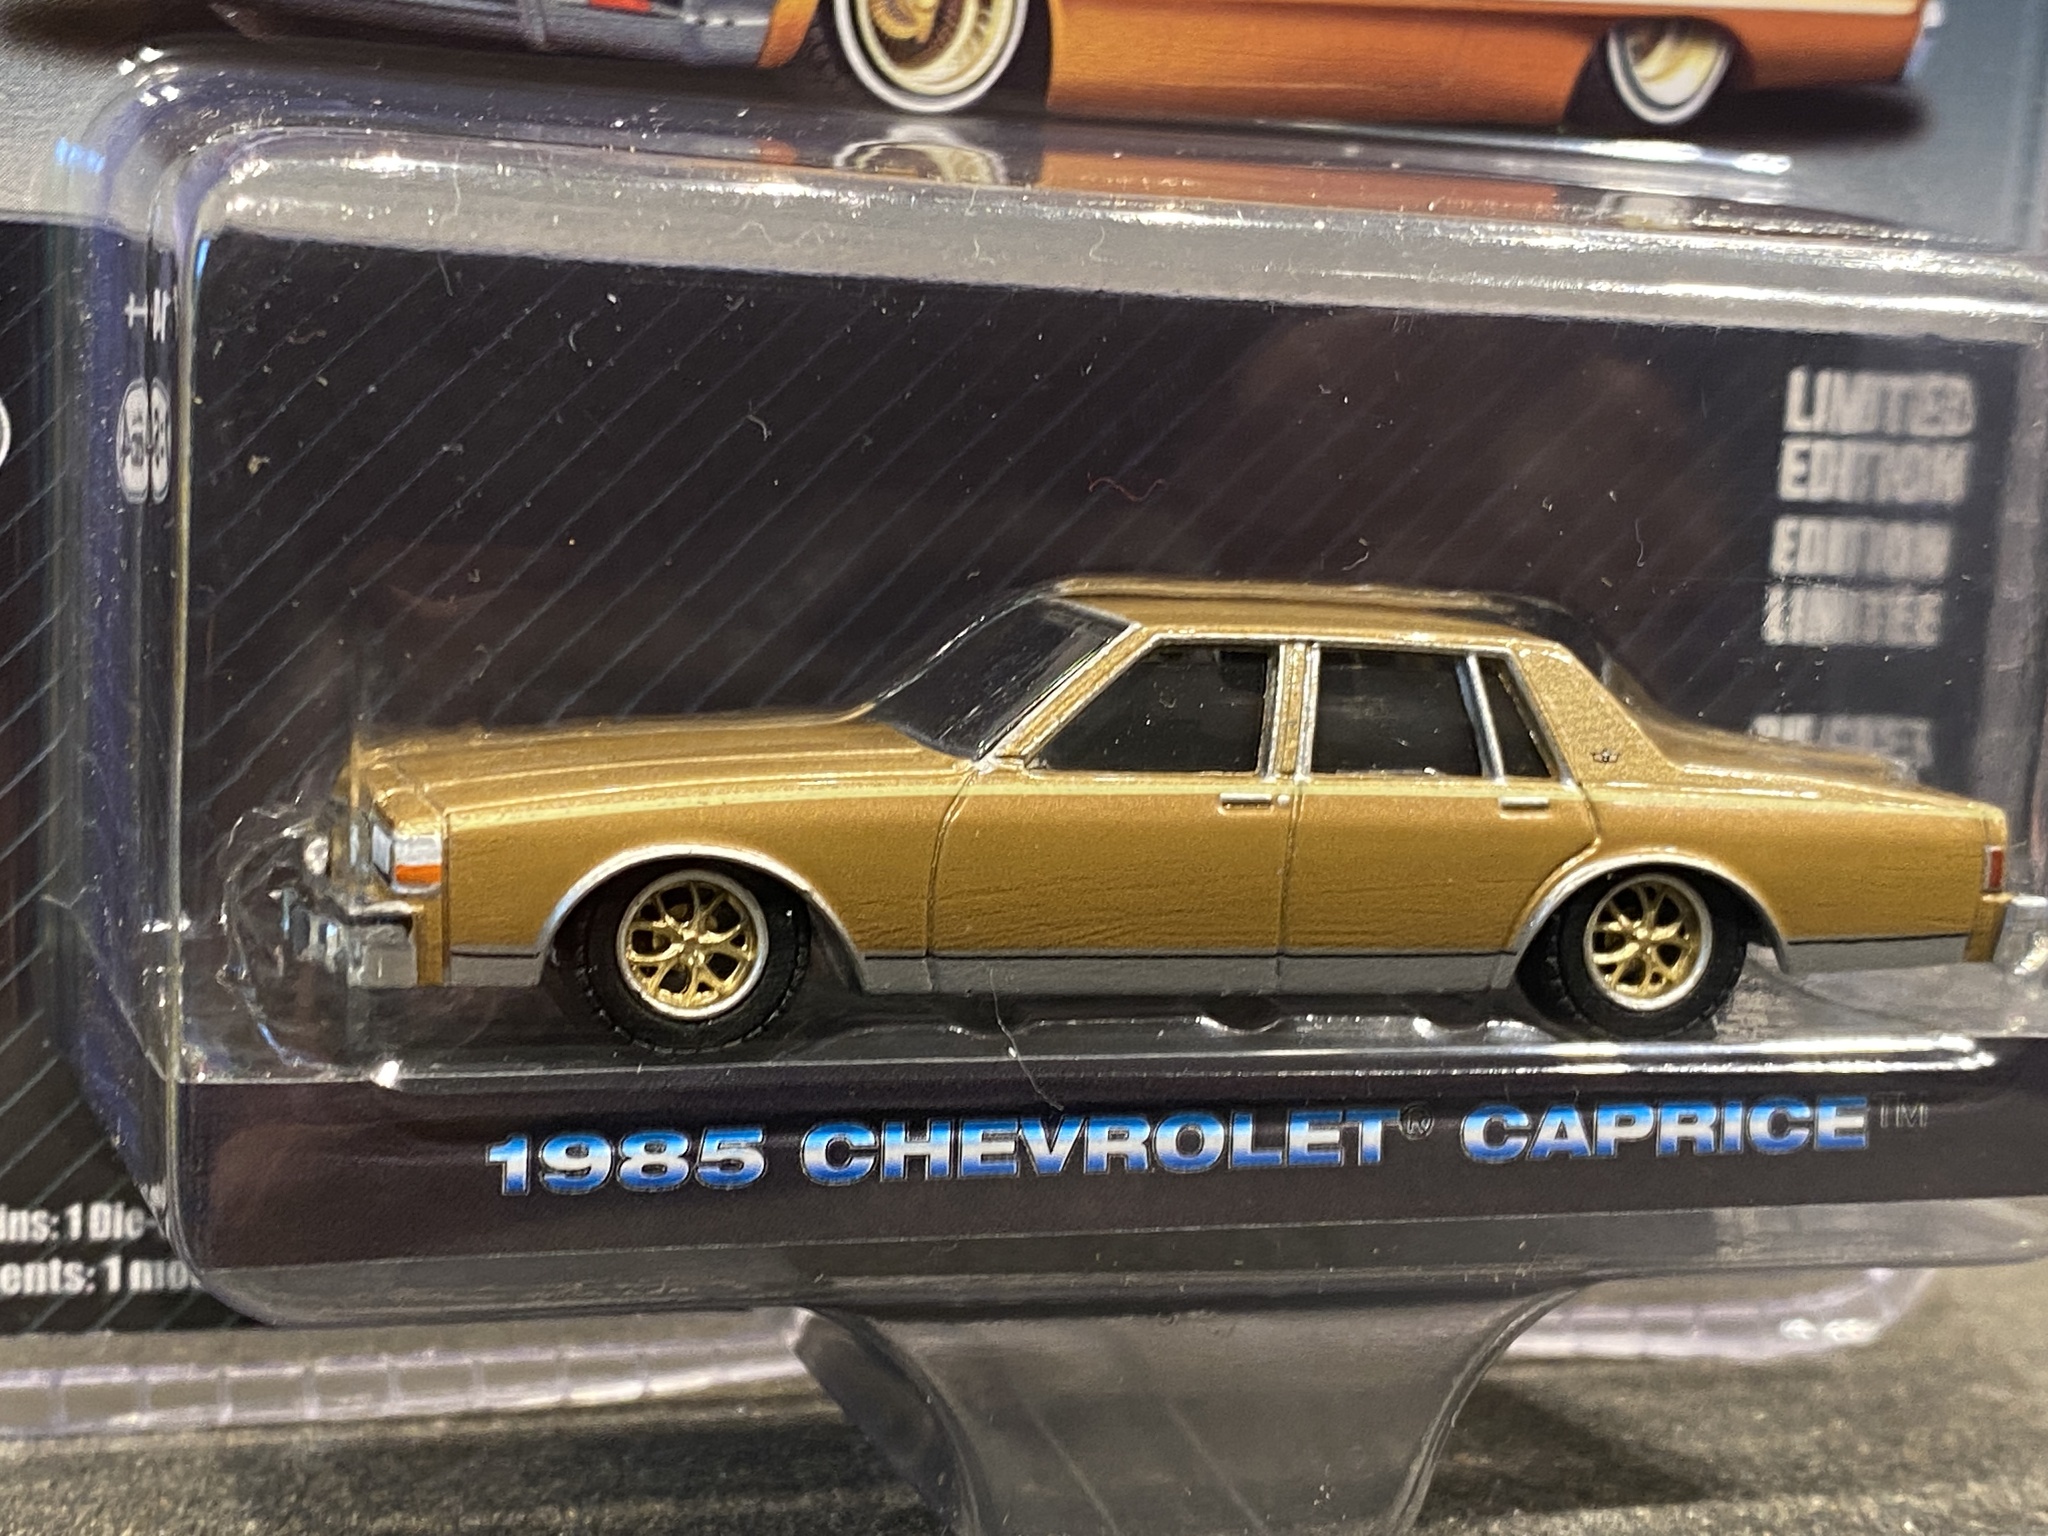 Skala 1/64 Chevrolet Caprice 85' "California LowRiders" guld från Greenlight